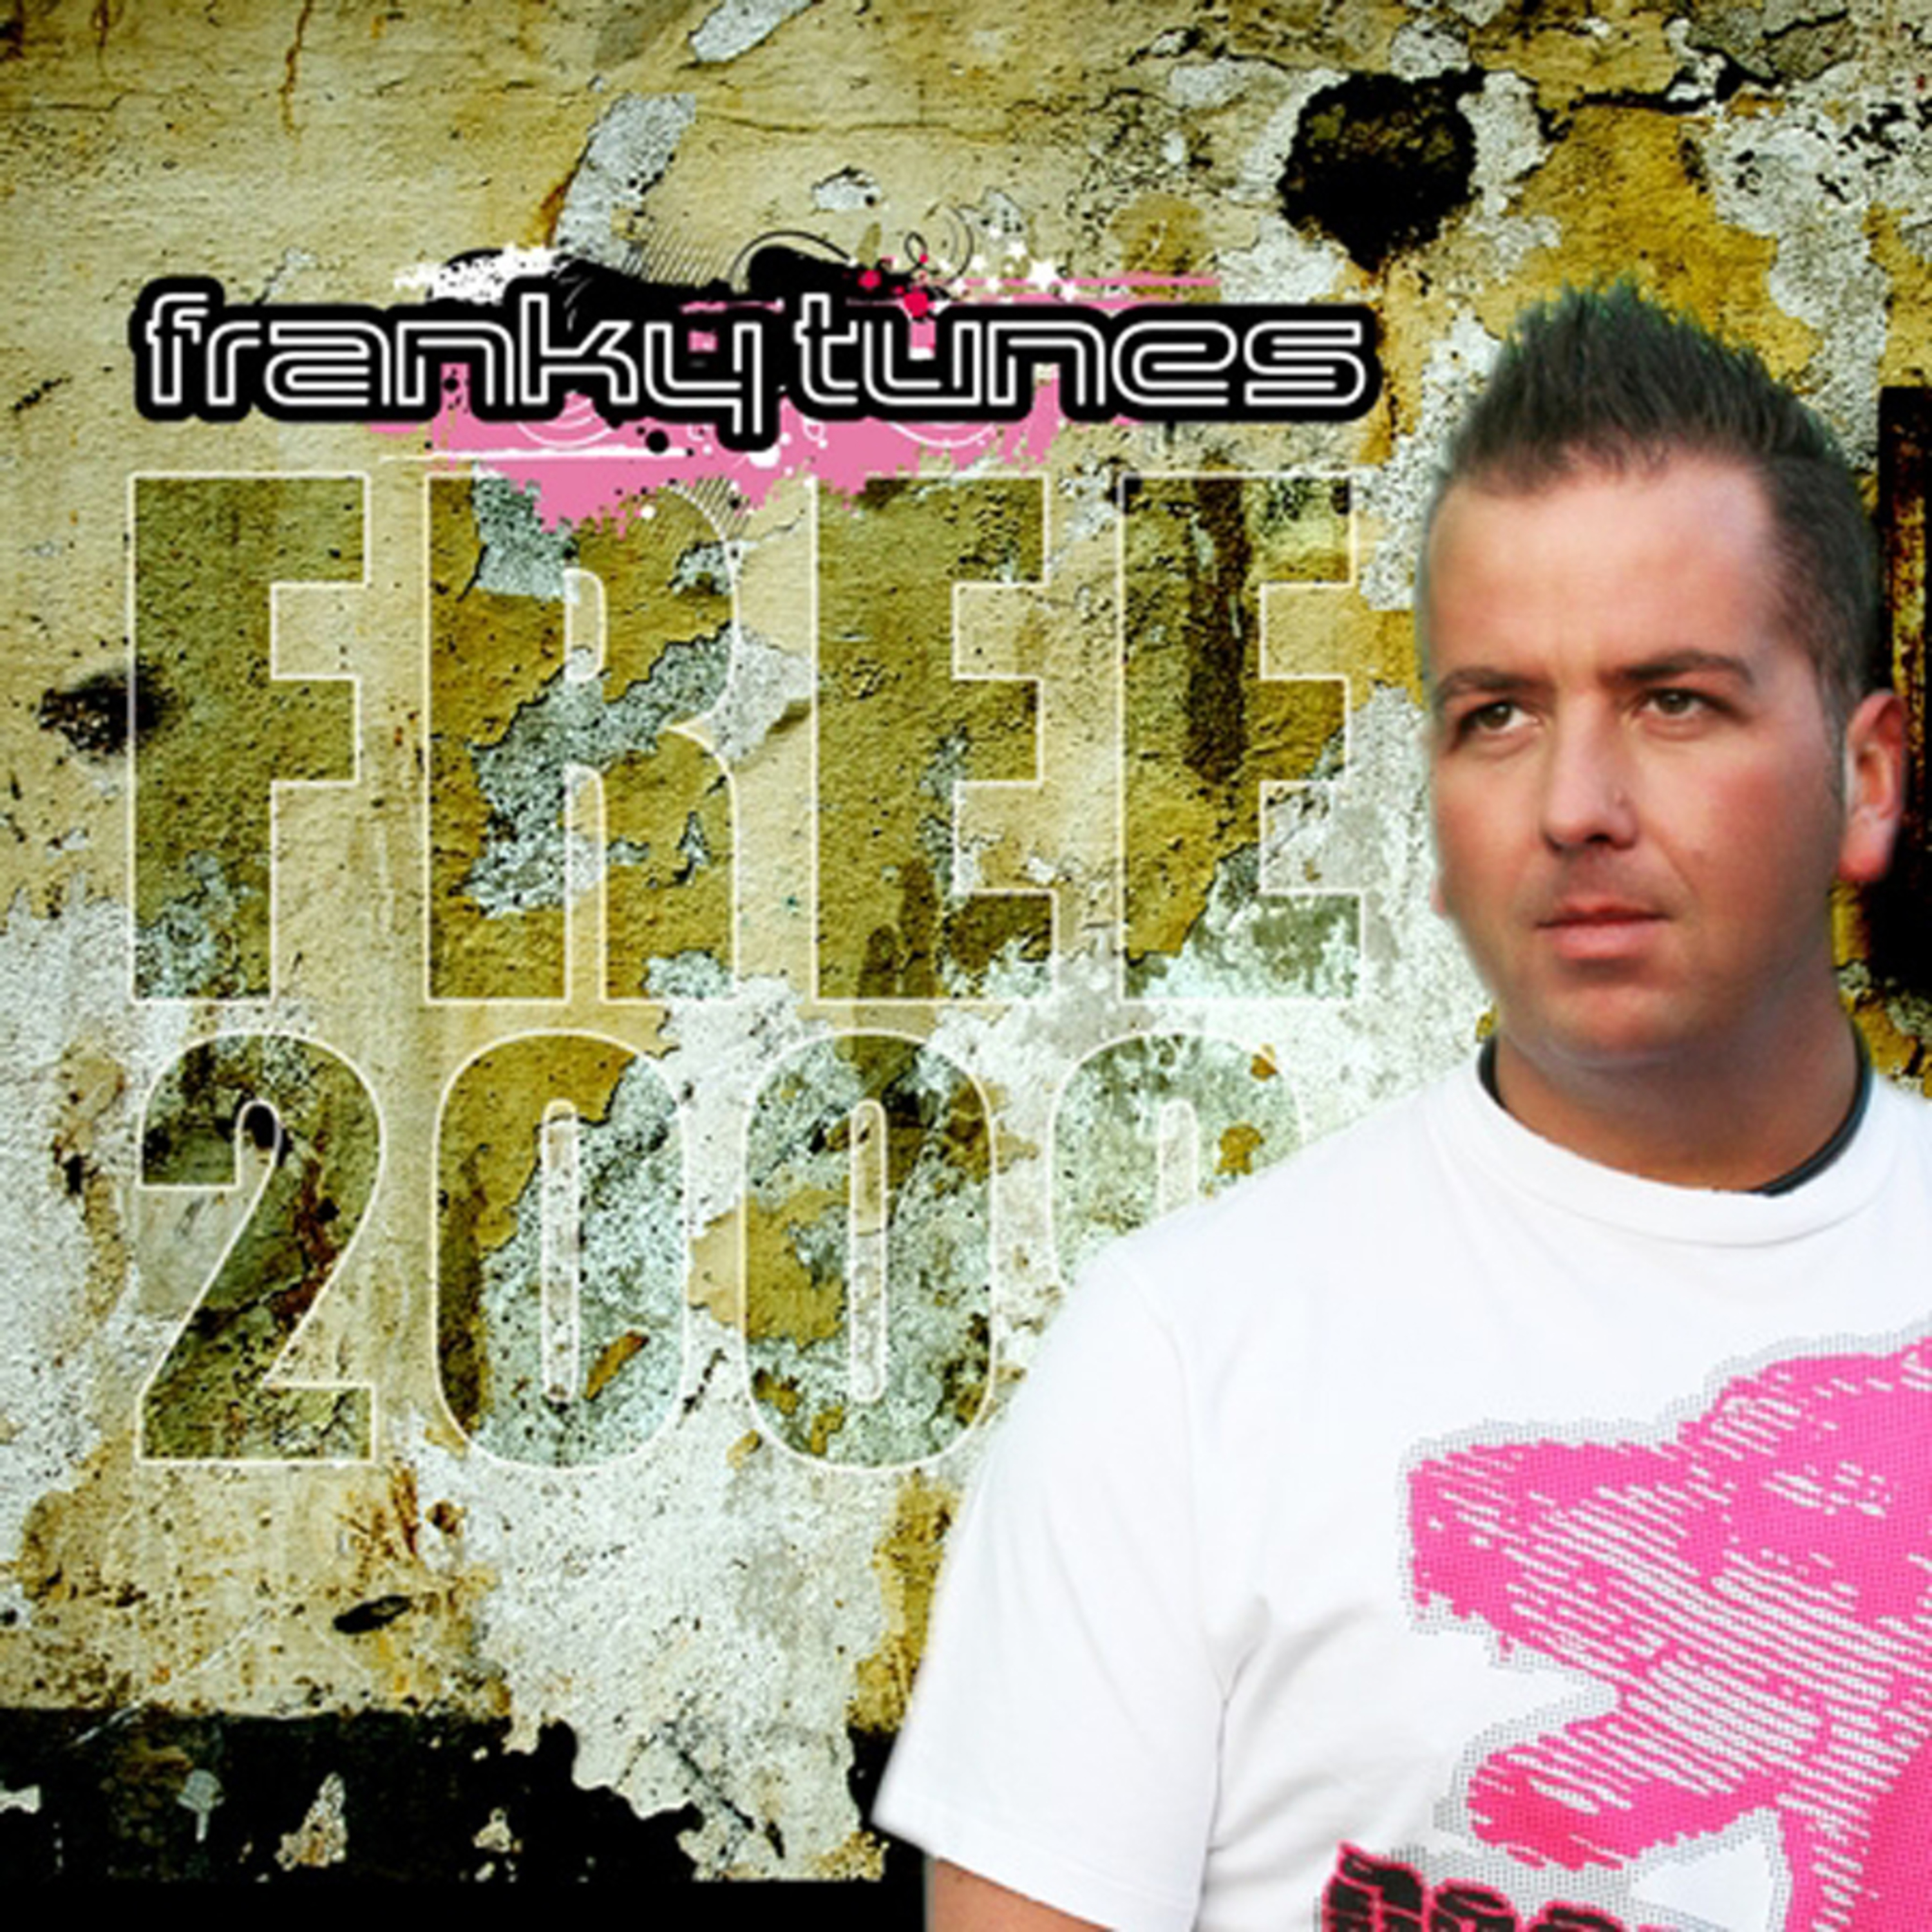 Free 2009 (Shaun Baker's Summer Breeze Mix)